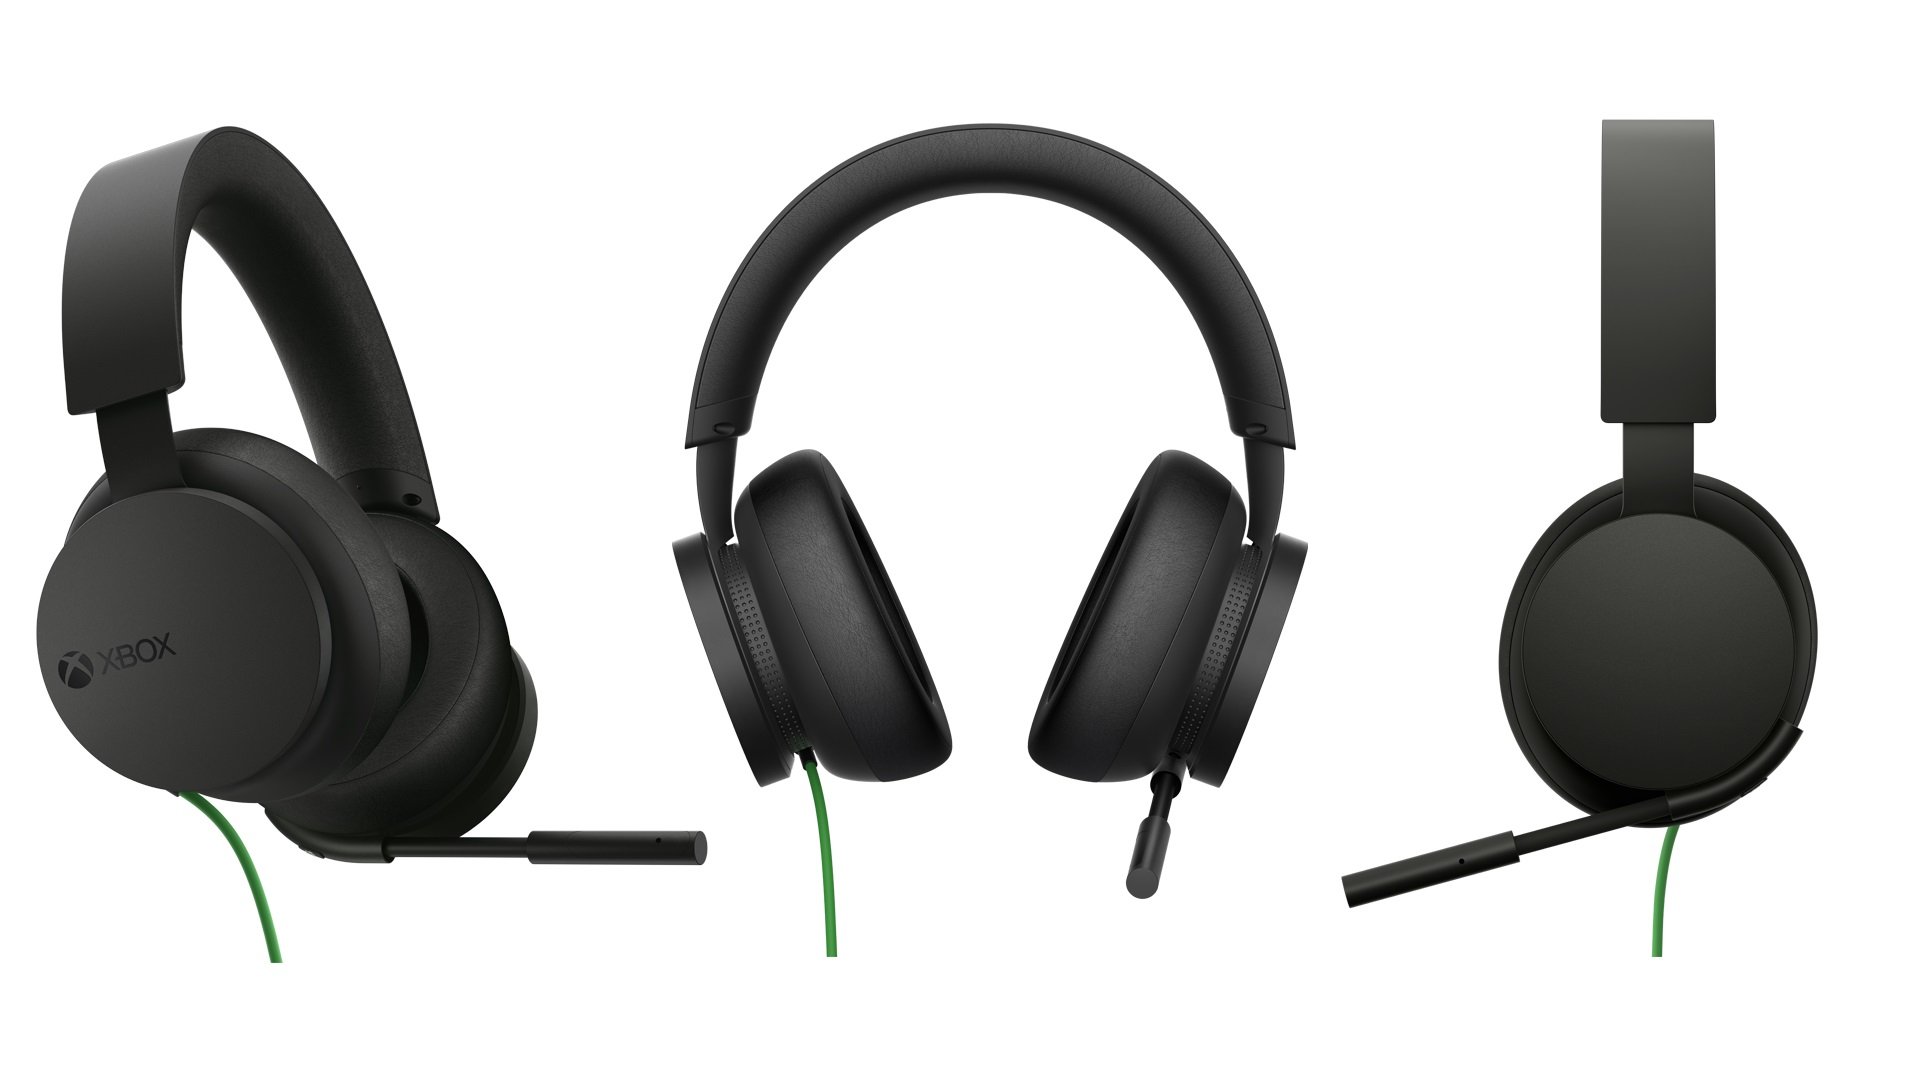 Goedkopere Xbox Stereo Headset aangekondigd